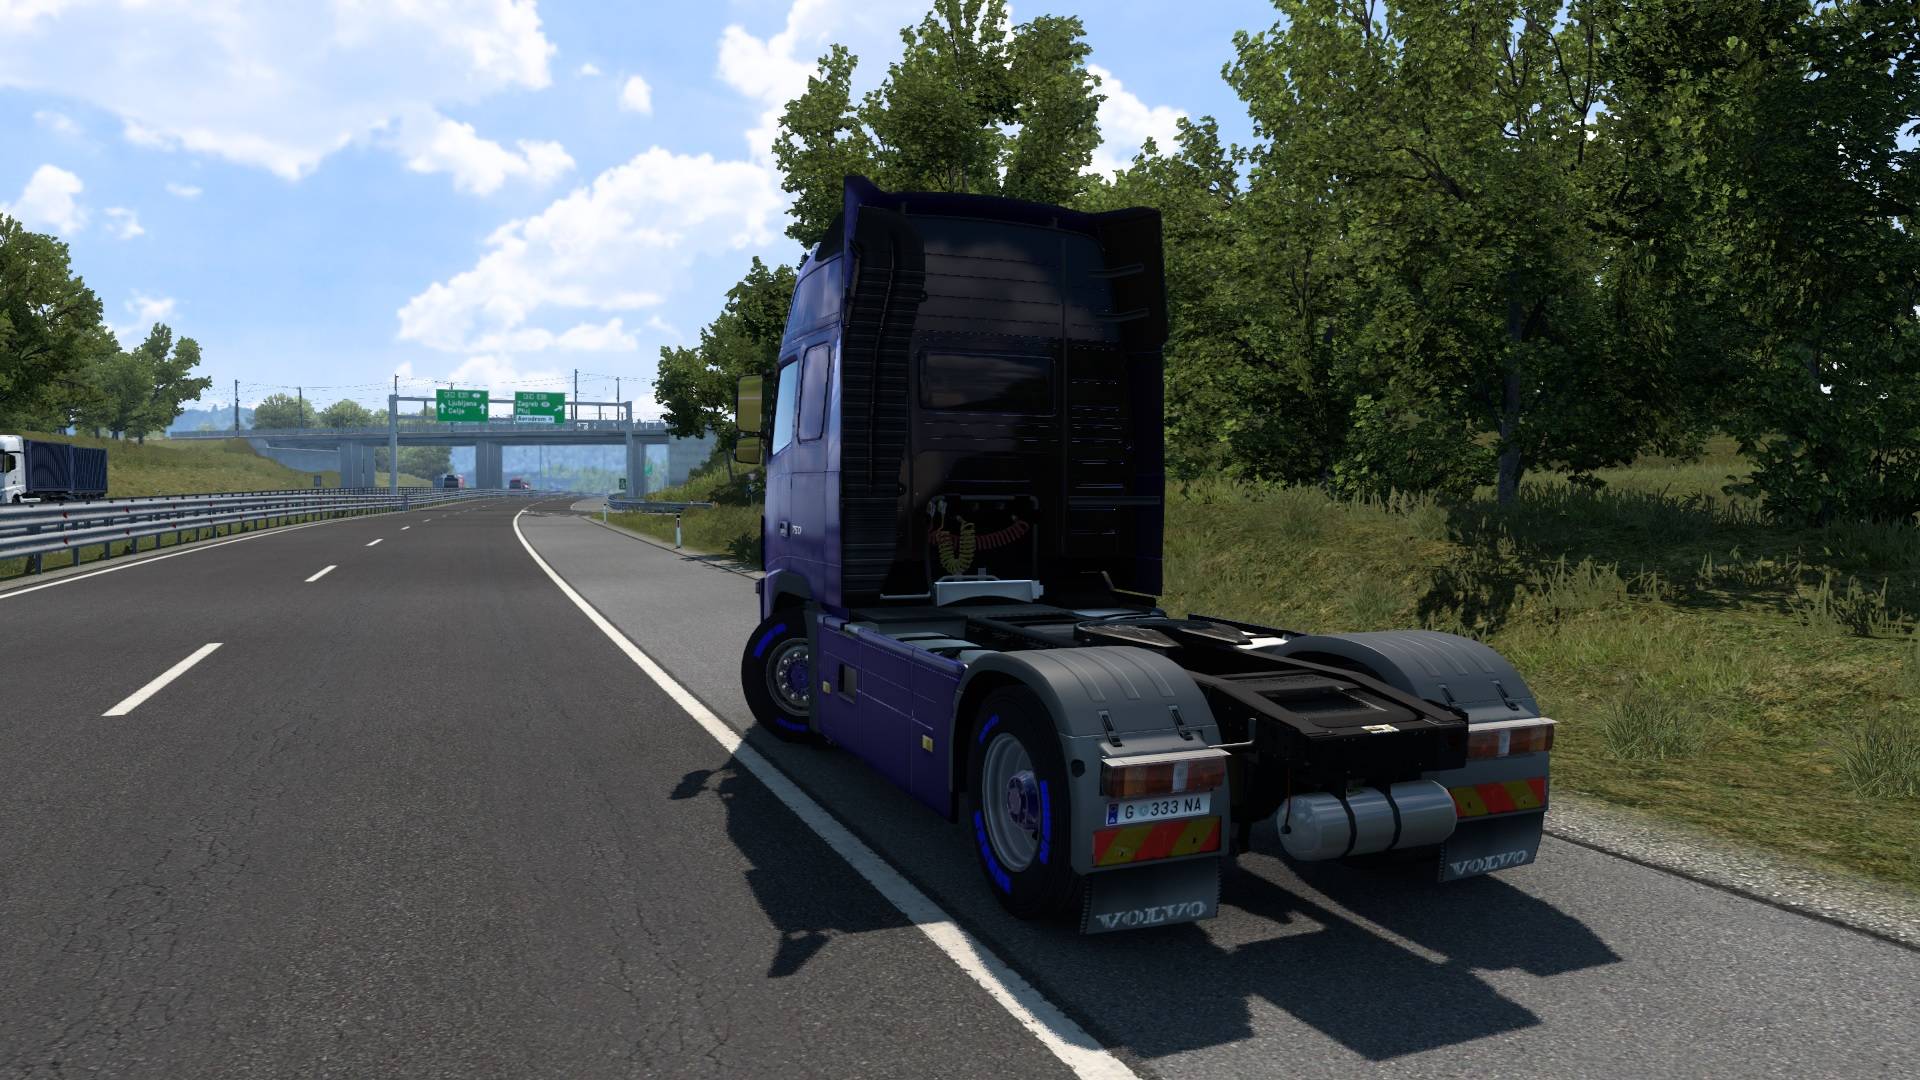 Euro Truck Simulator 2 (нанял челиков 250, куда теперь сливать заработанное)